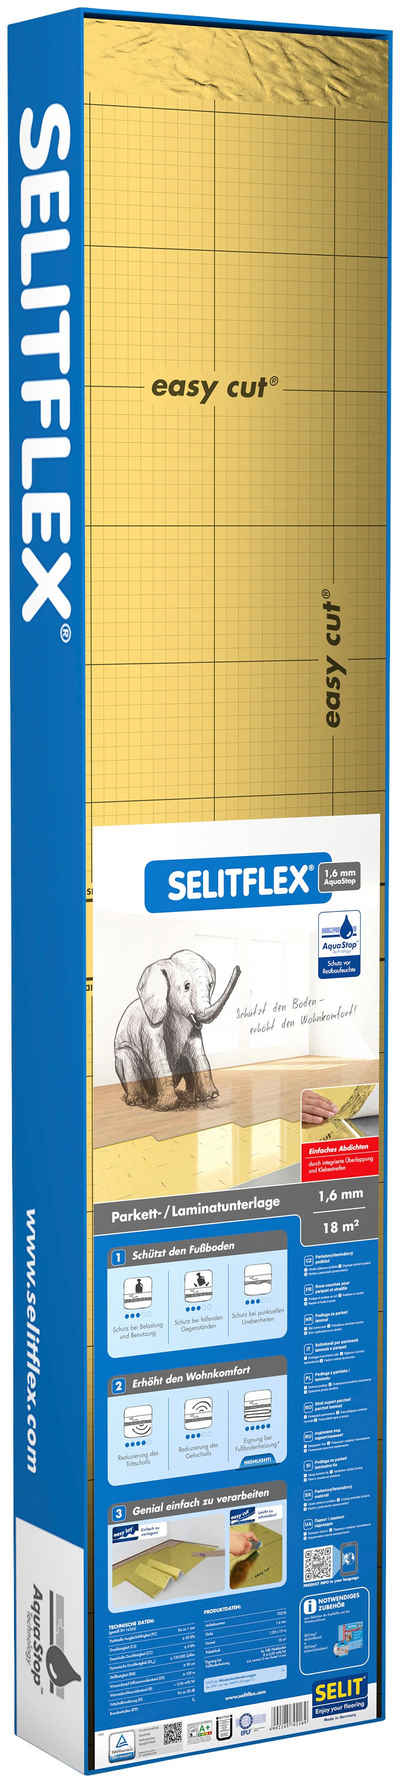 Selit Trittschalldämmplatte »SELITFLEX«, 1,6 mm, 18 m², für Fußbodenheizung geeignet, faltbar,mit Tape